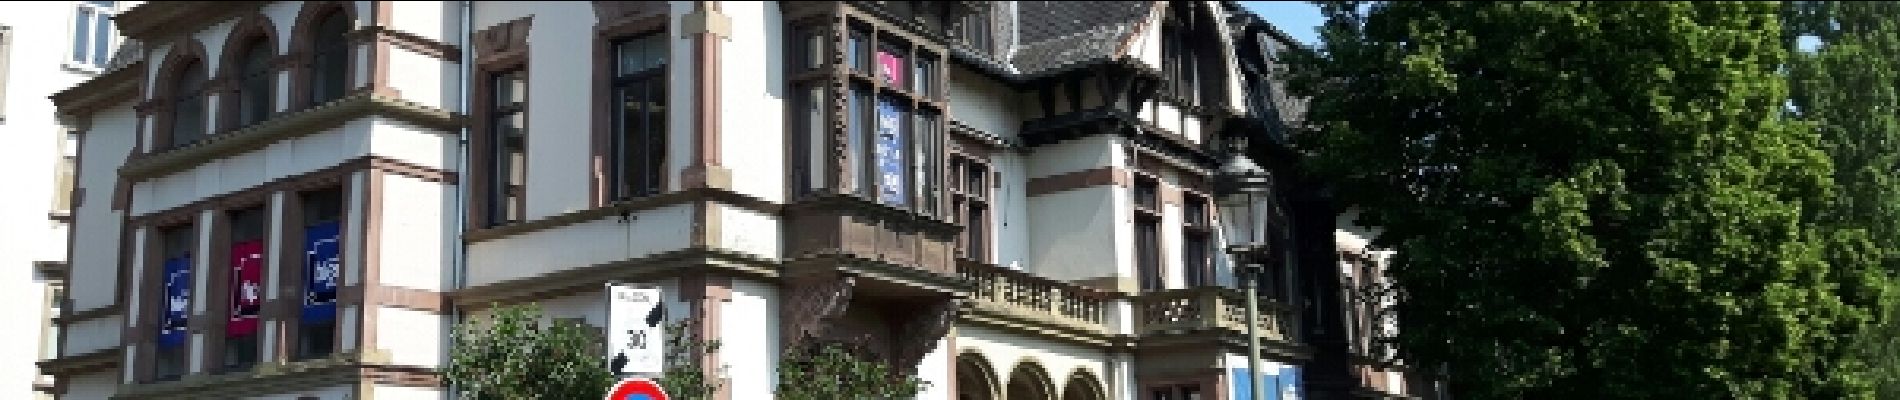 Punto de interés Estrasburgo - Point 29 - Ancienne villa Ritleng  - 1885 - Photo